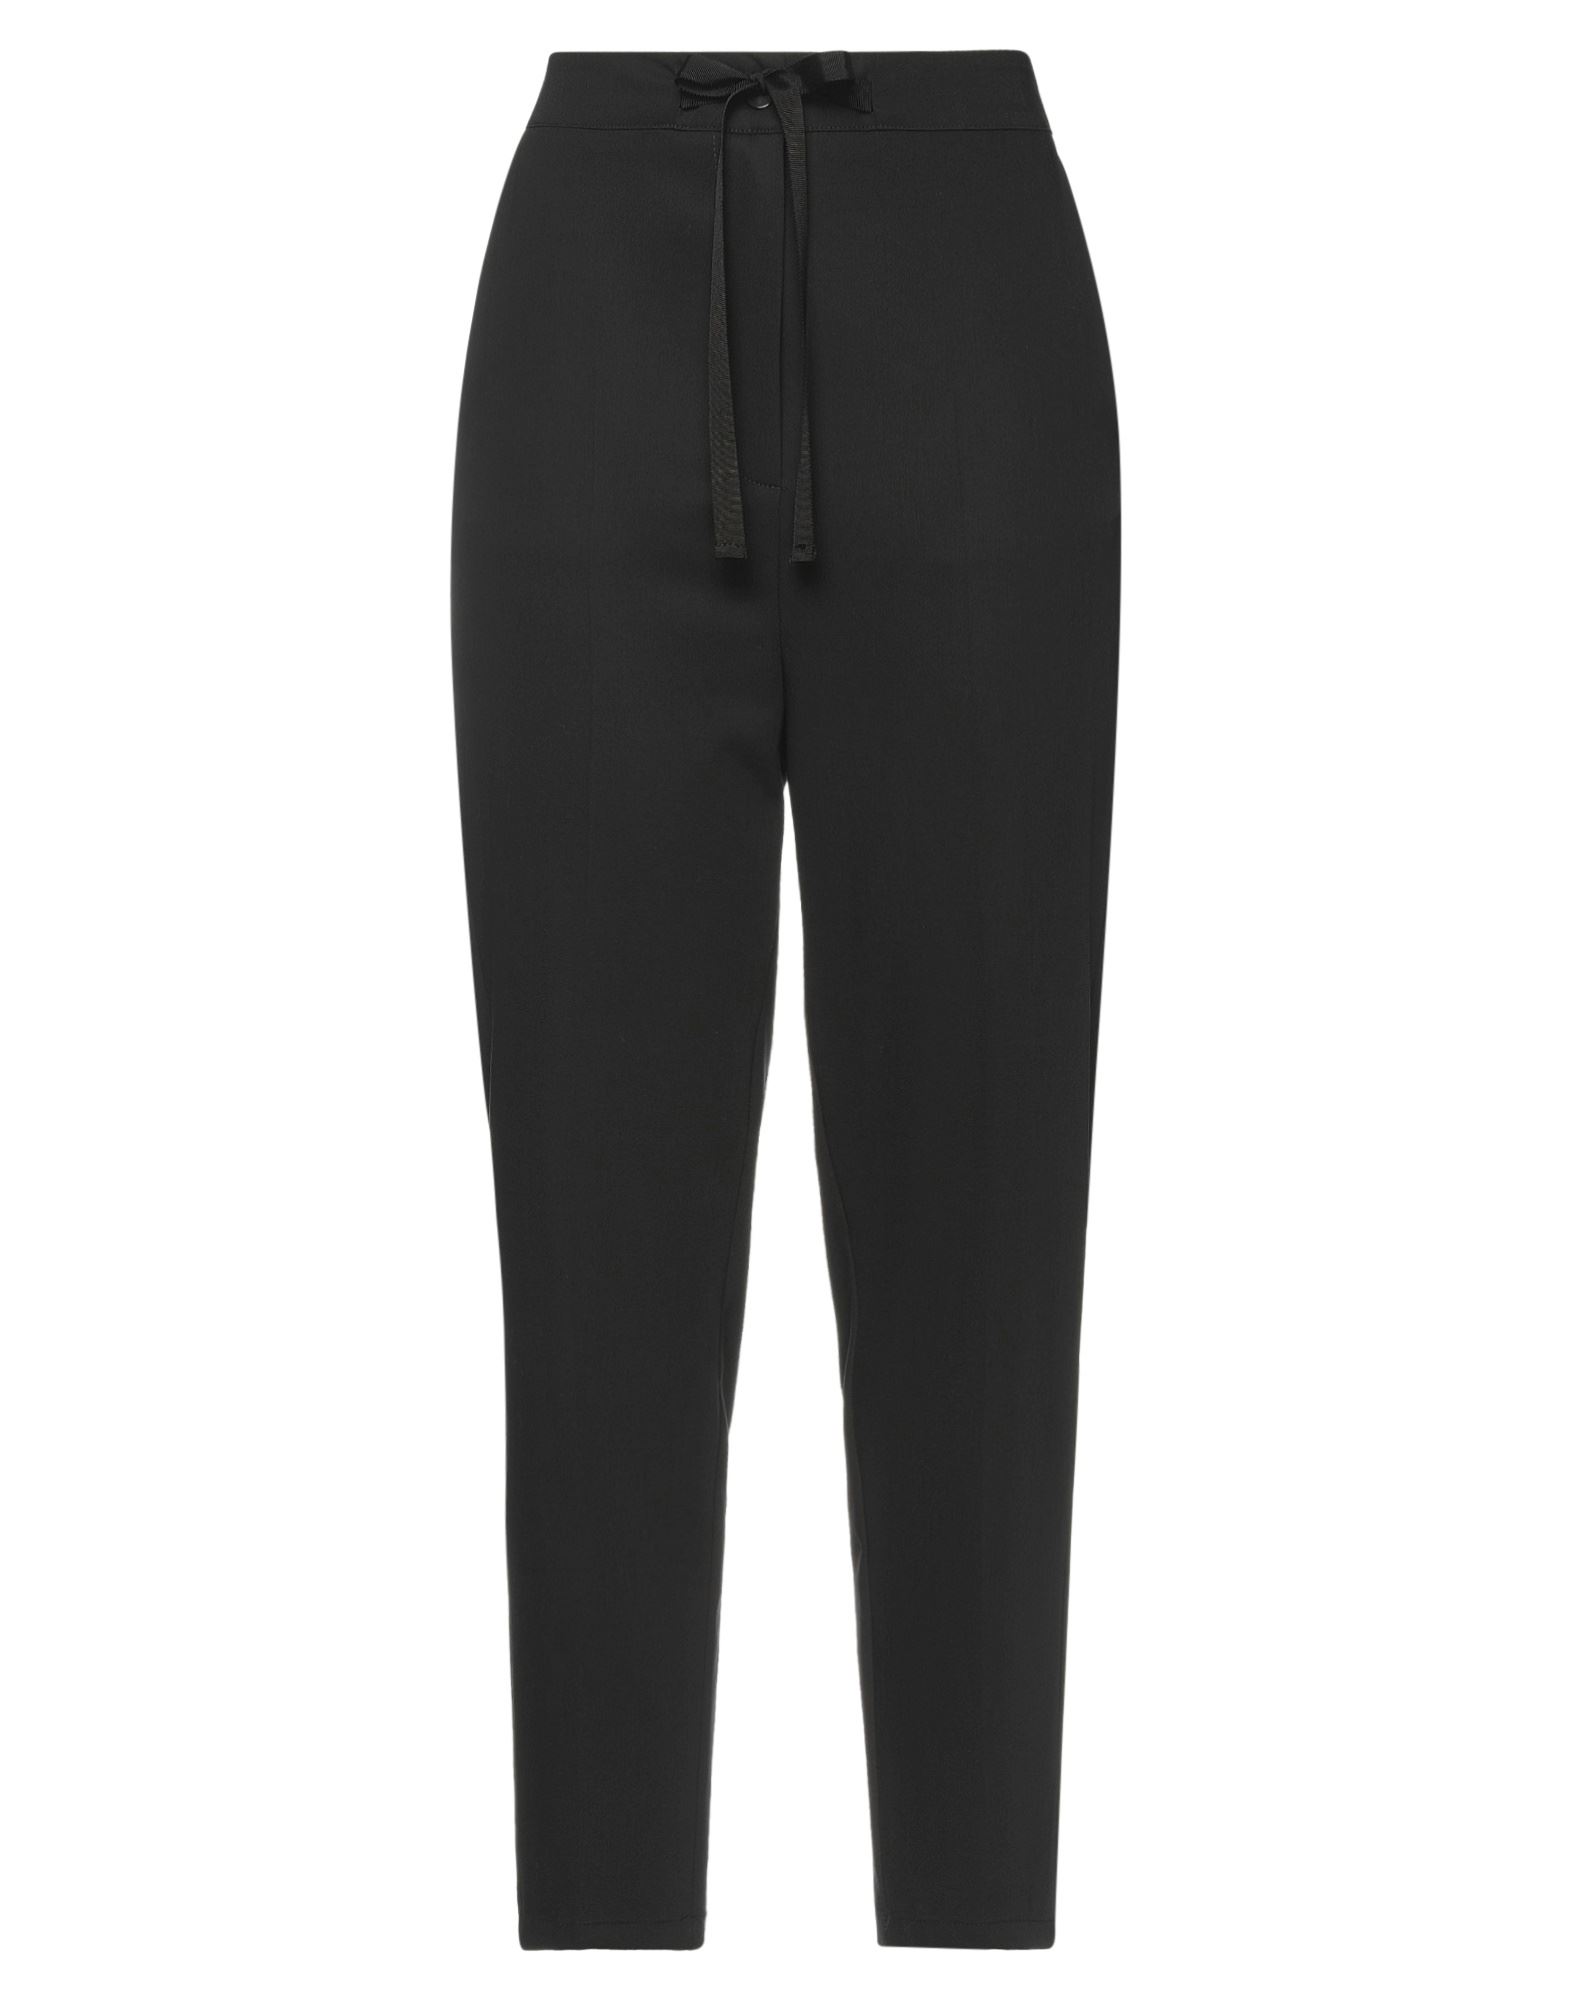 Shop Alessia Santi Woman Pants Black Size 8 Polyester, Viscose, Elastane